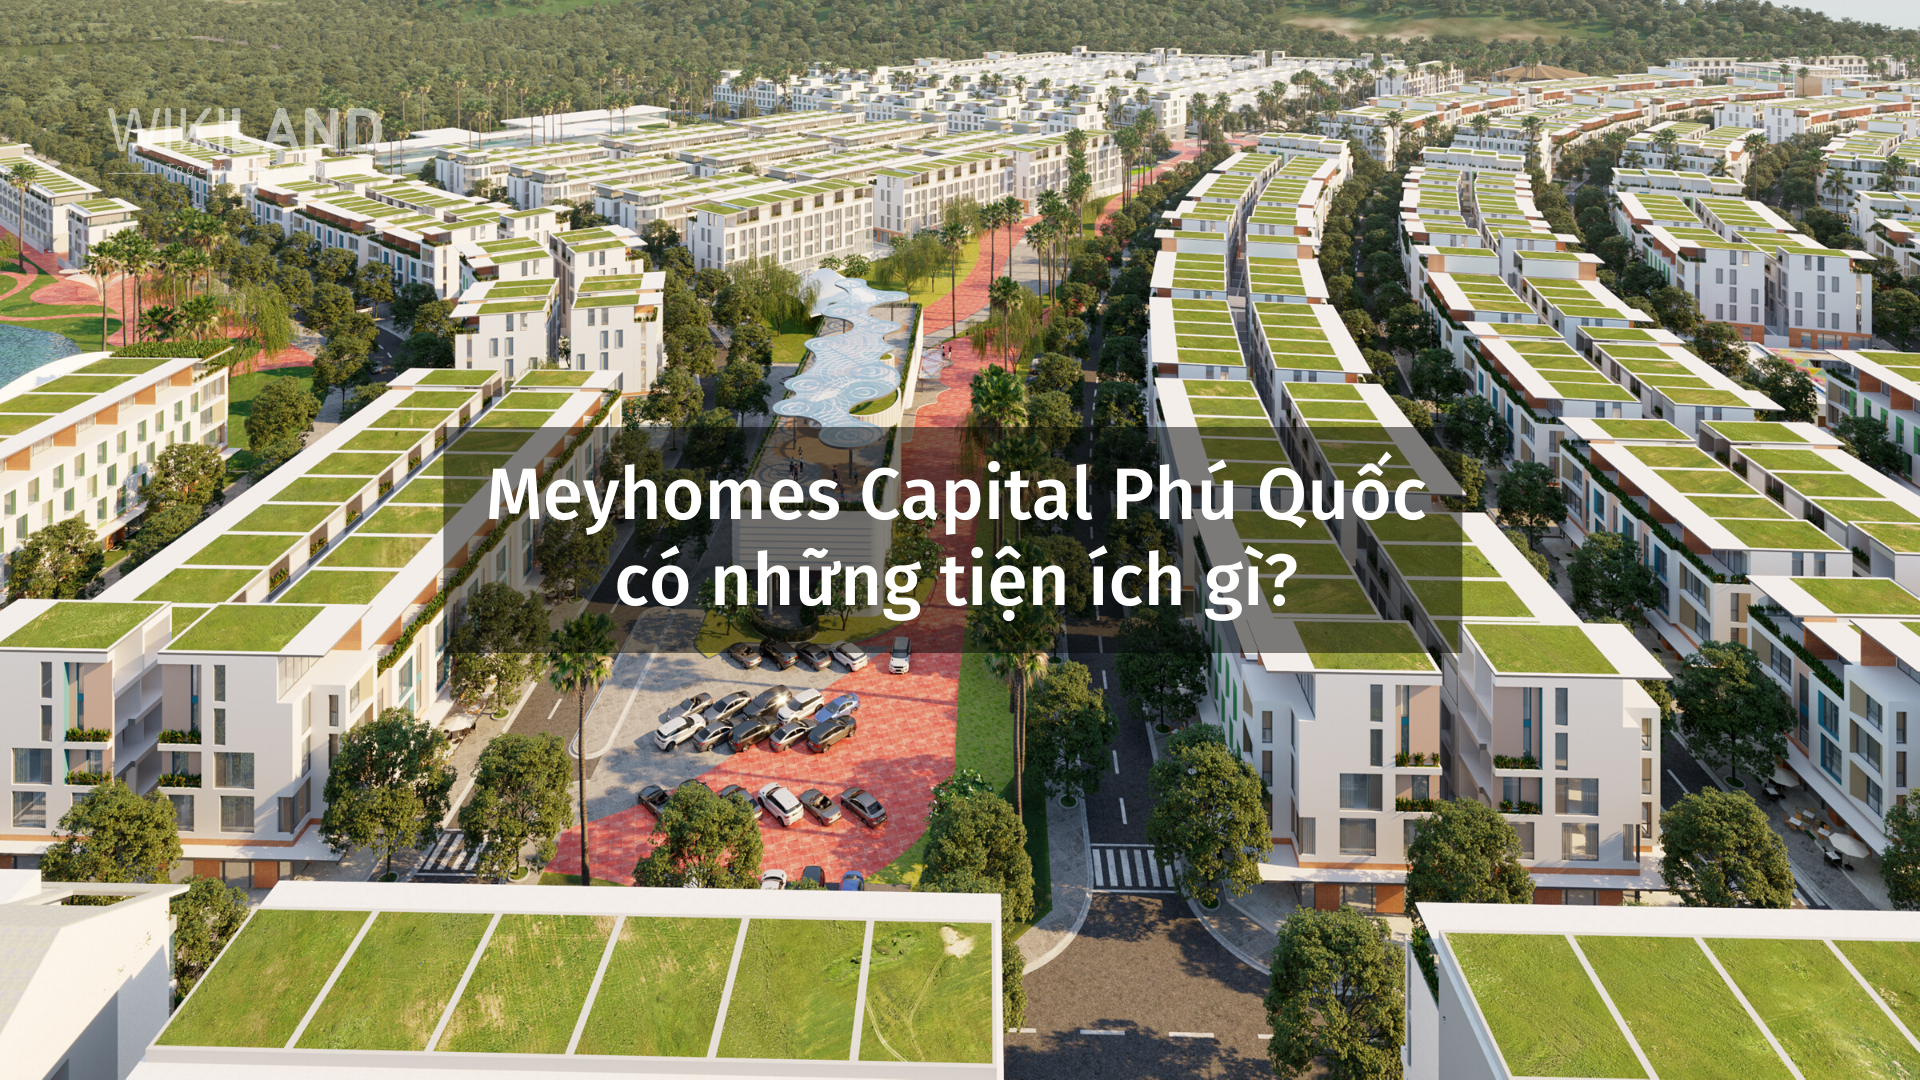 Tiện ích Meyhomes Capital Phú Quốc có những gì?